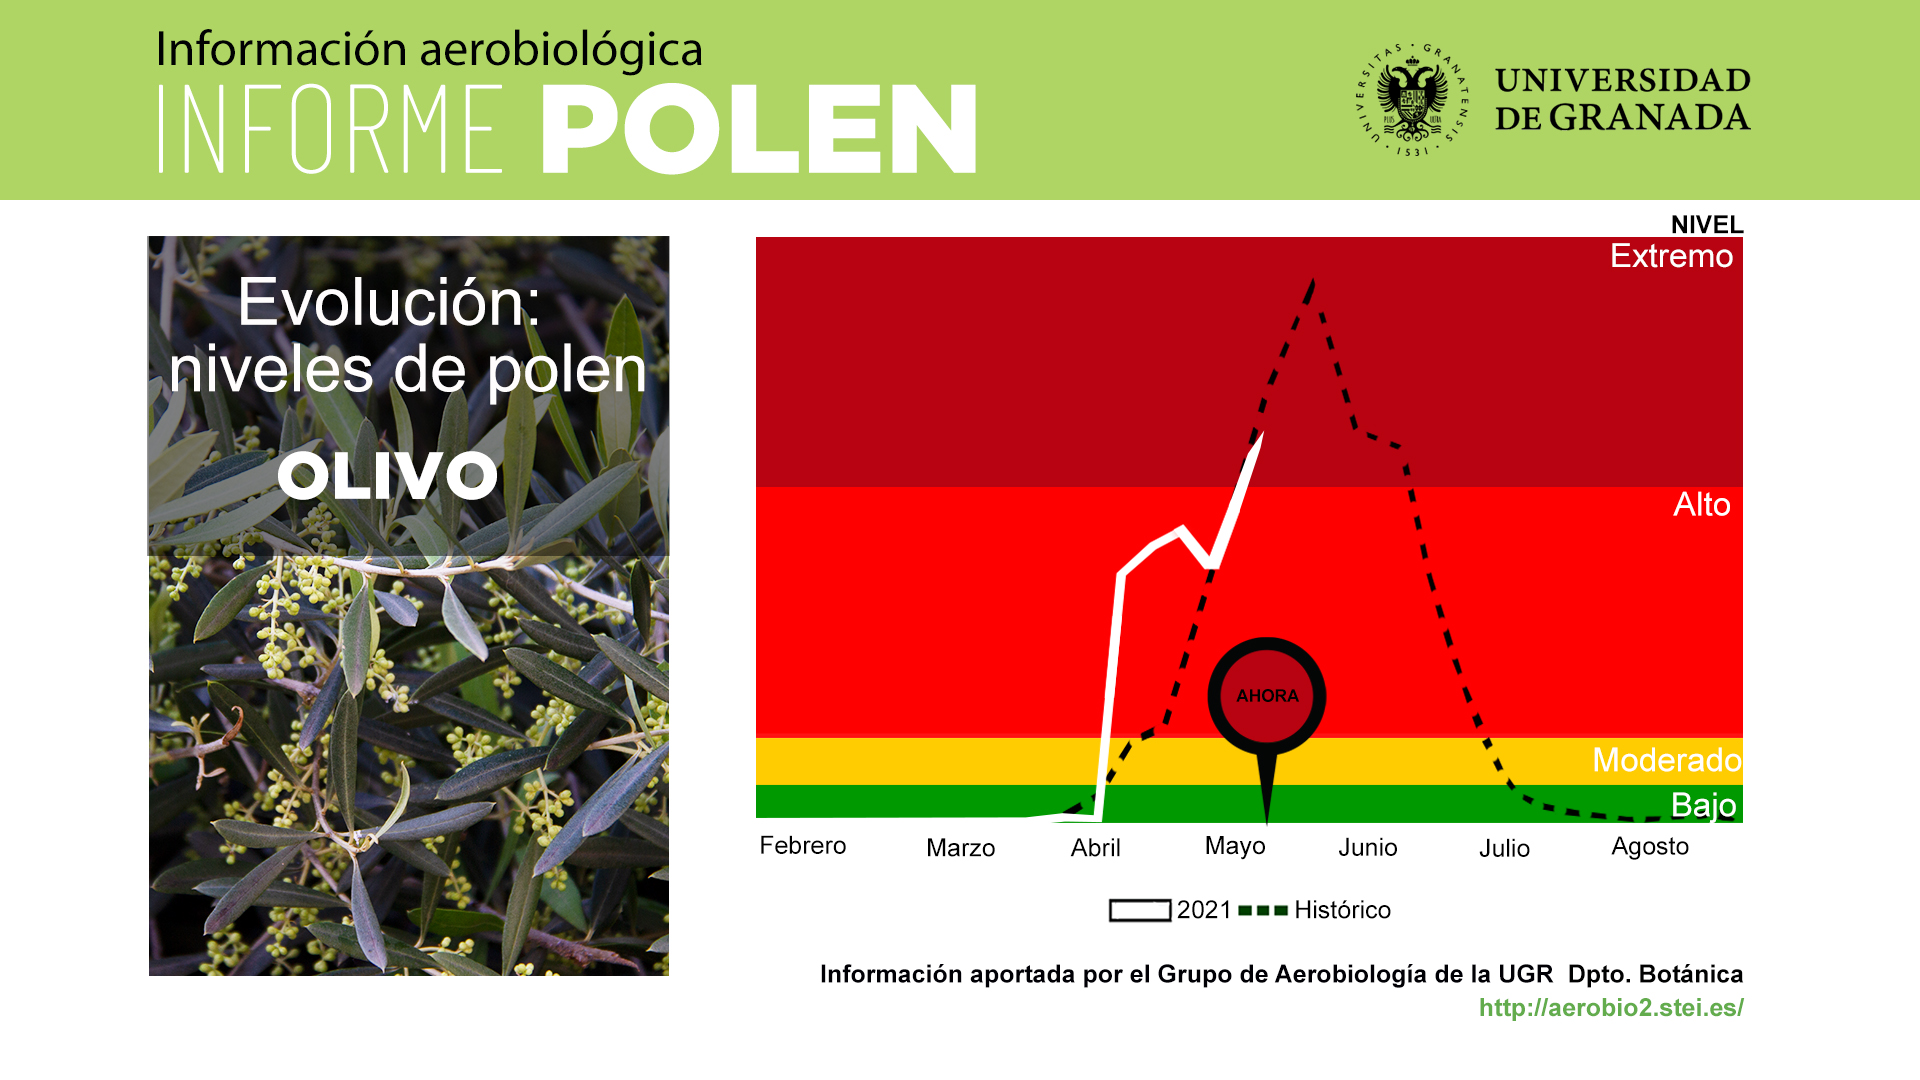 El impacto polínico del olivo alcanza nivel extremo